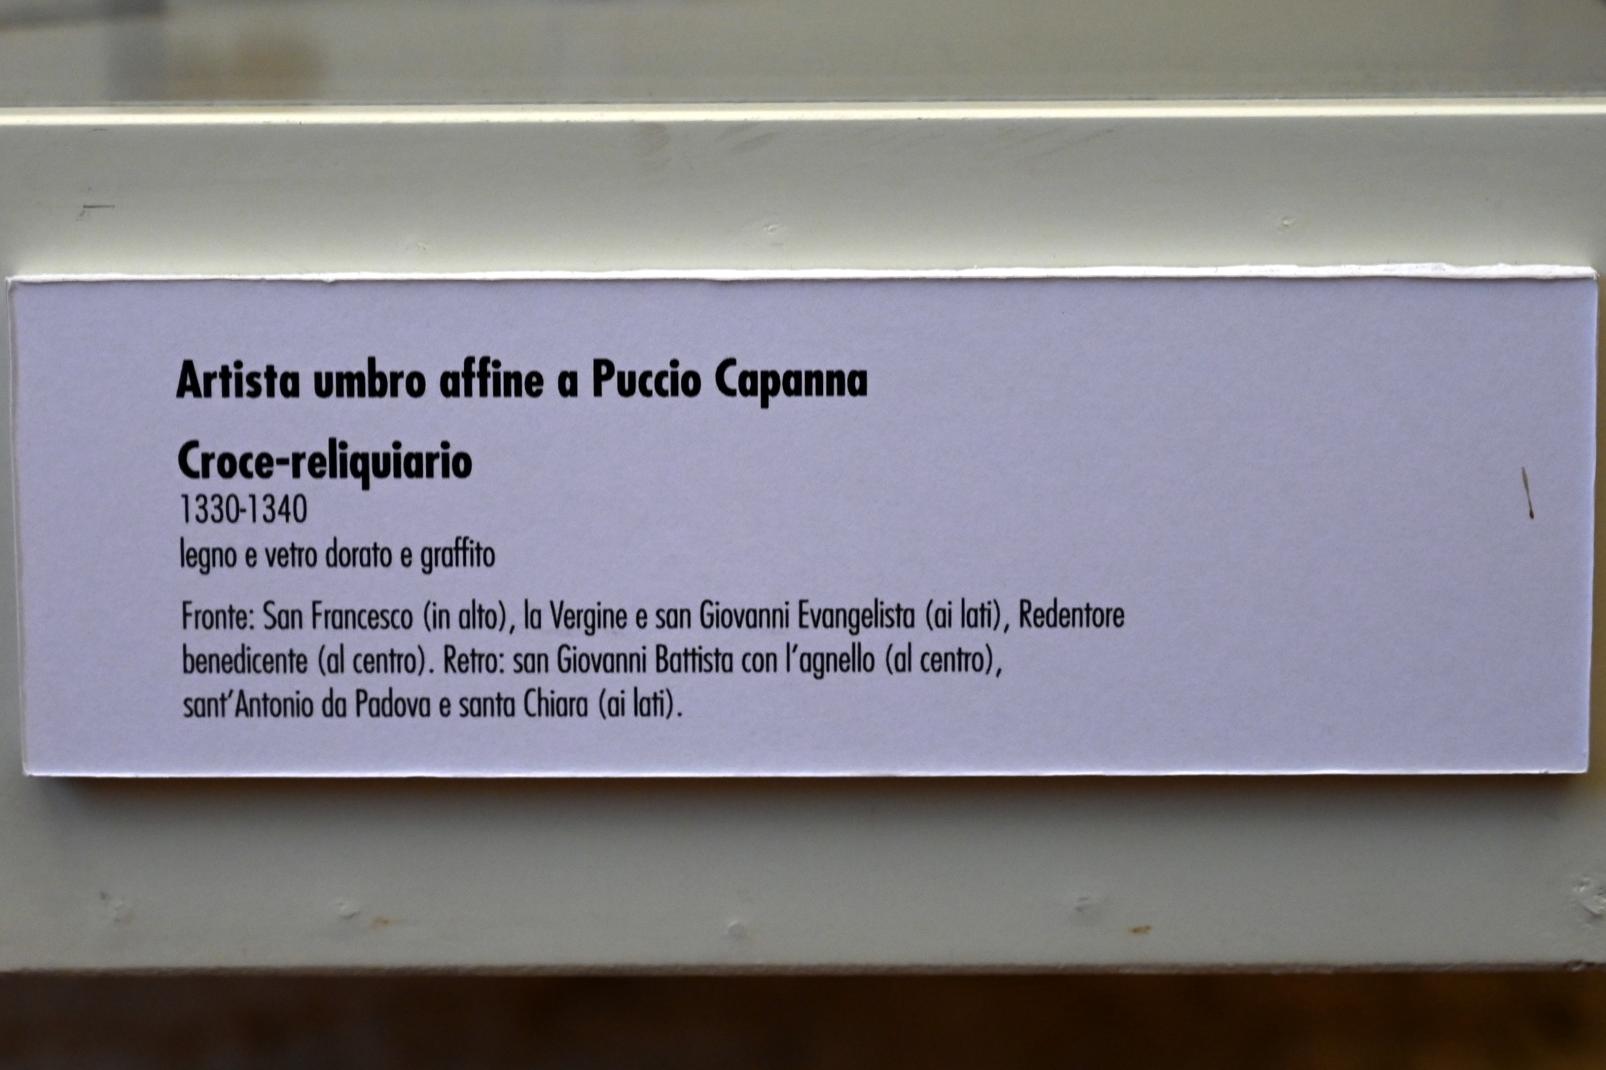 Puccio Capanna (Umkreis) (1335), Kreuzreliquie, Gubbio, Pinacoteca Comunale im Palazzo dei Consoli, Obergeschoss Saal 1, 1330–1340, Bild 2/2